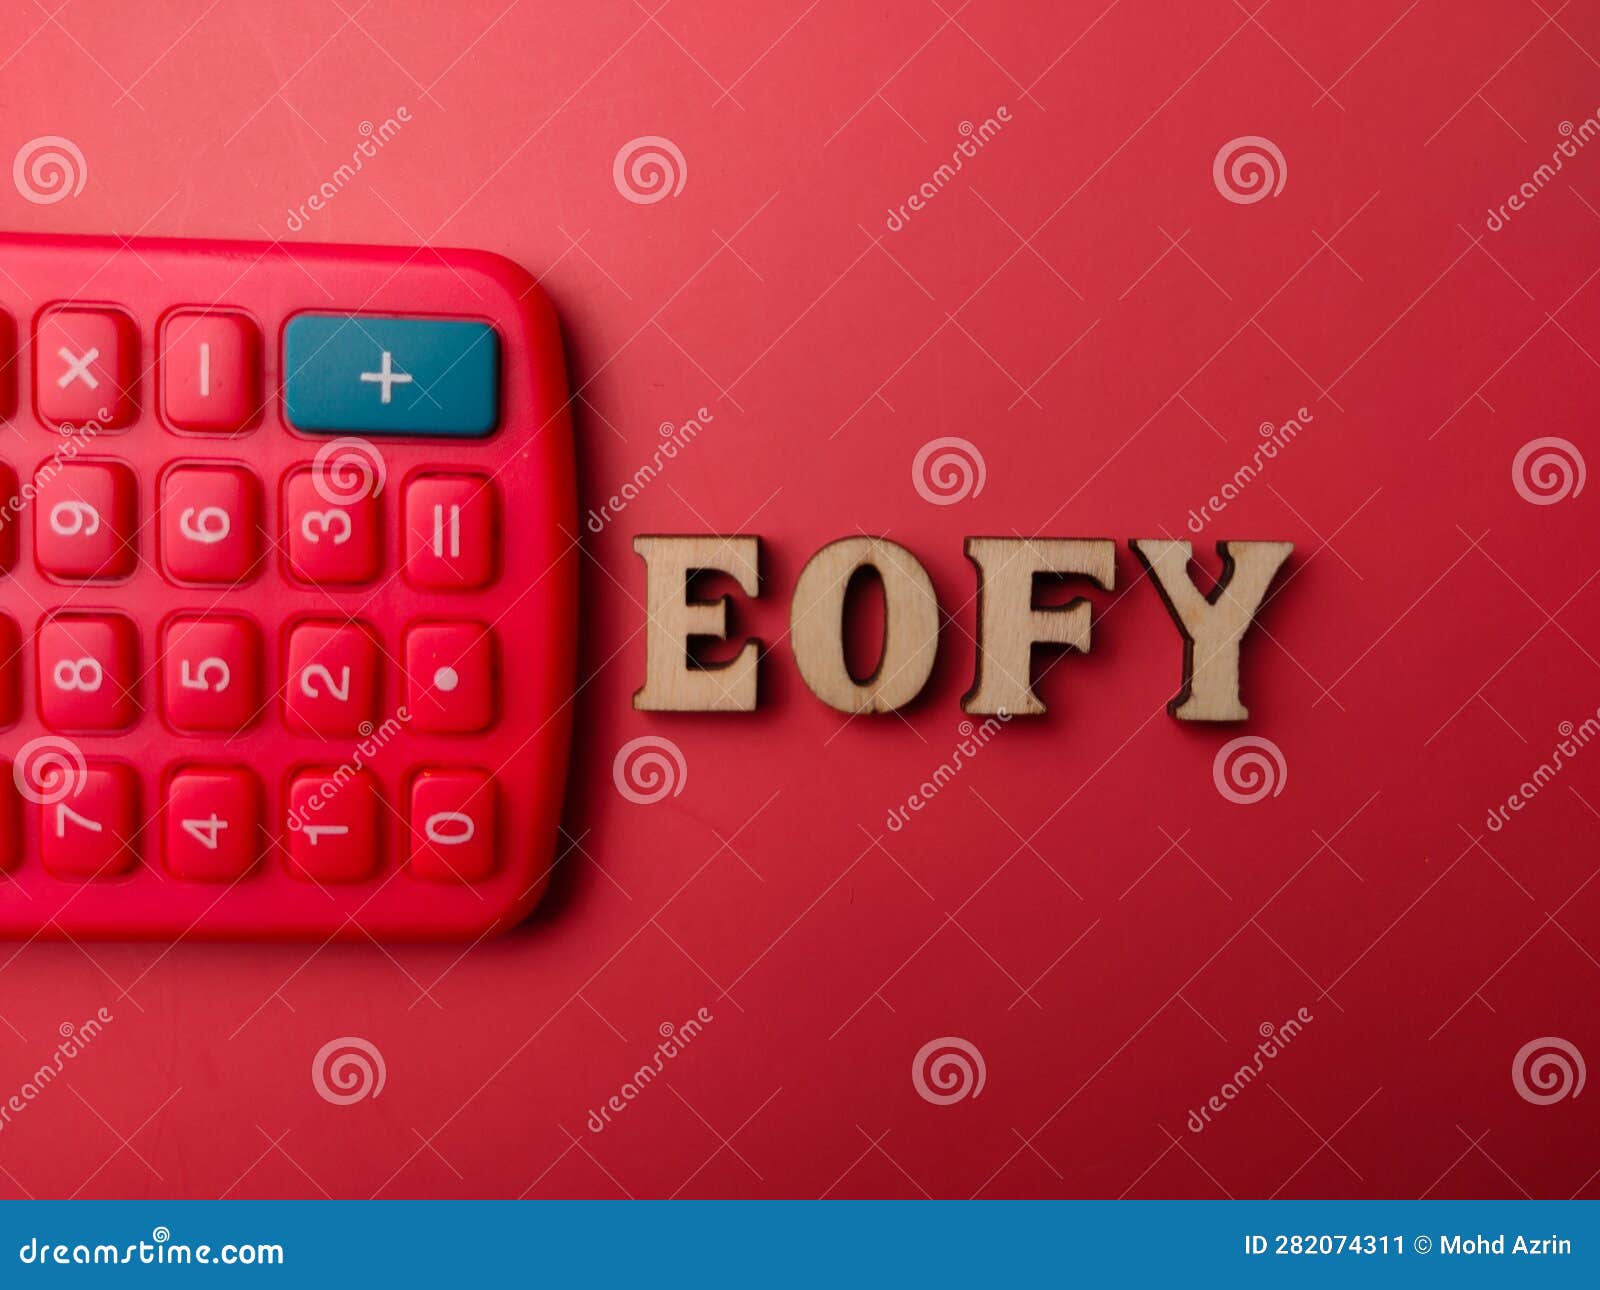 Una calcolatrice rosa con la parola calcolatrice in alto.